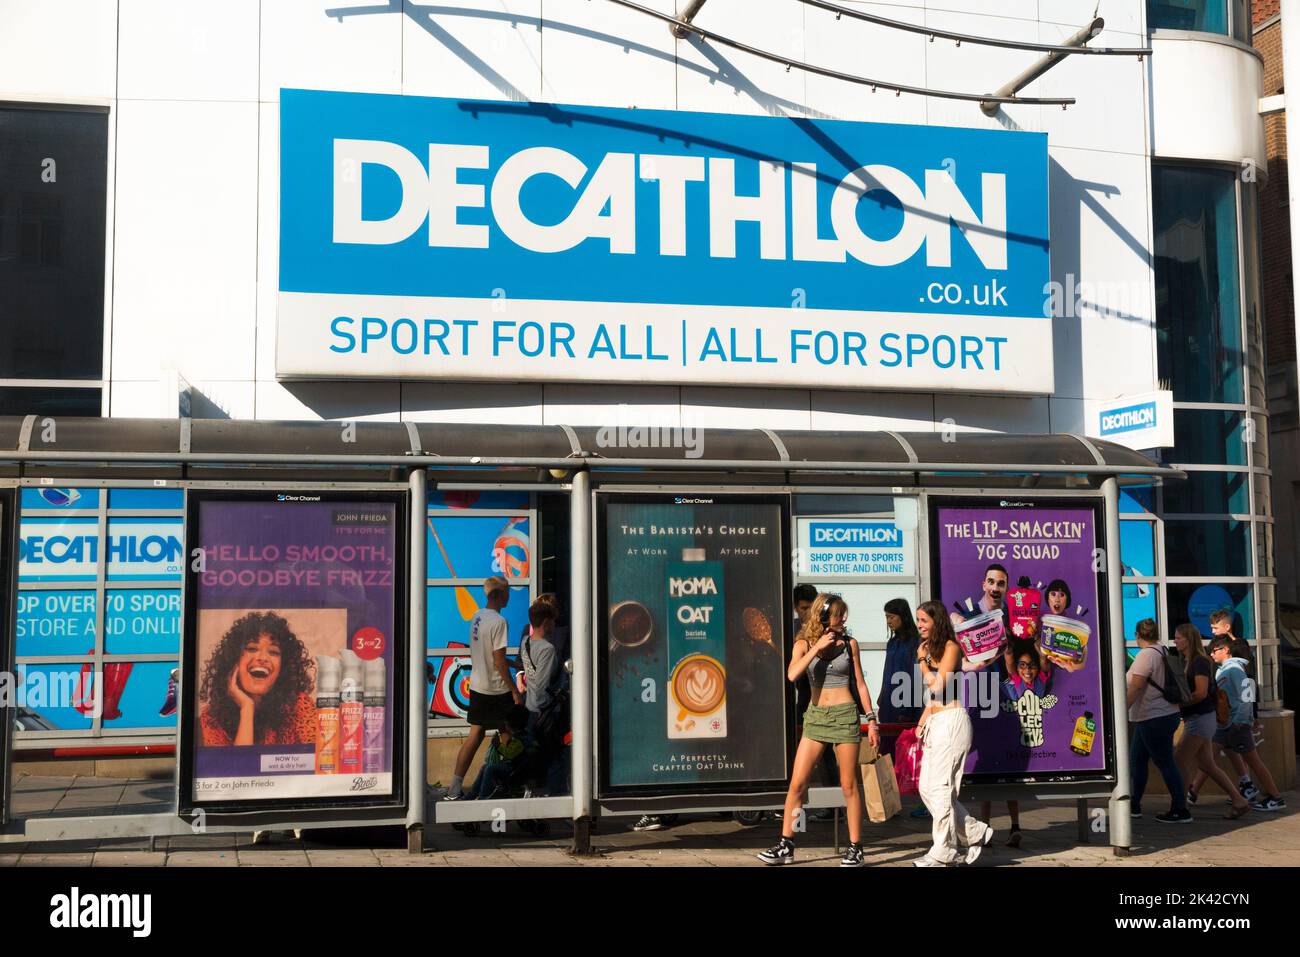 Außen / außerhalb des Decathlon Sport- / Sportausrüstungsladens / Einzelhändler / Laden in Brighton, East Sussex. Großbritannien, an einem sonnigen Tag mit Sonne. (131) Stockfoto